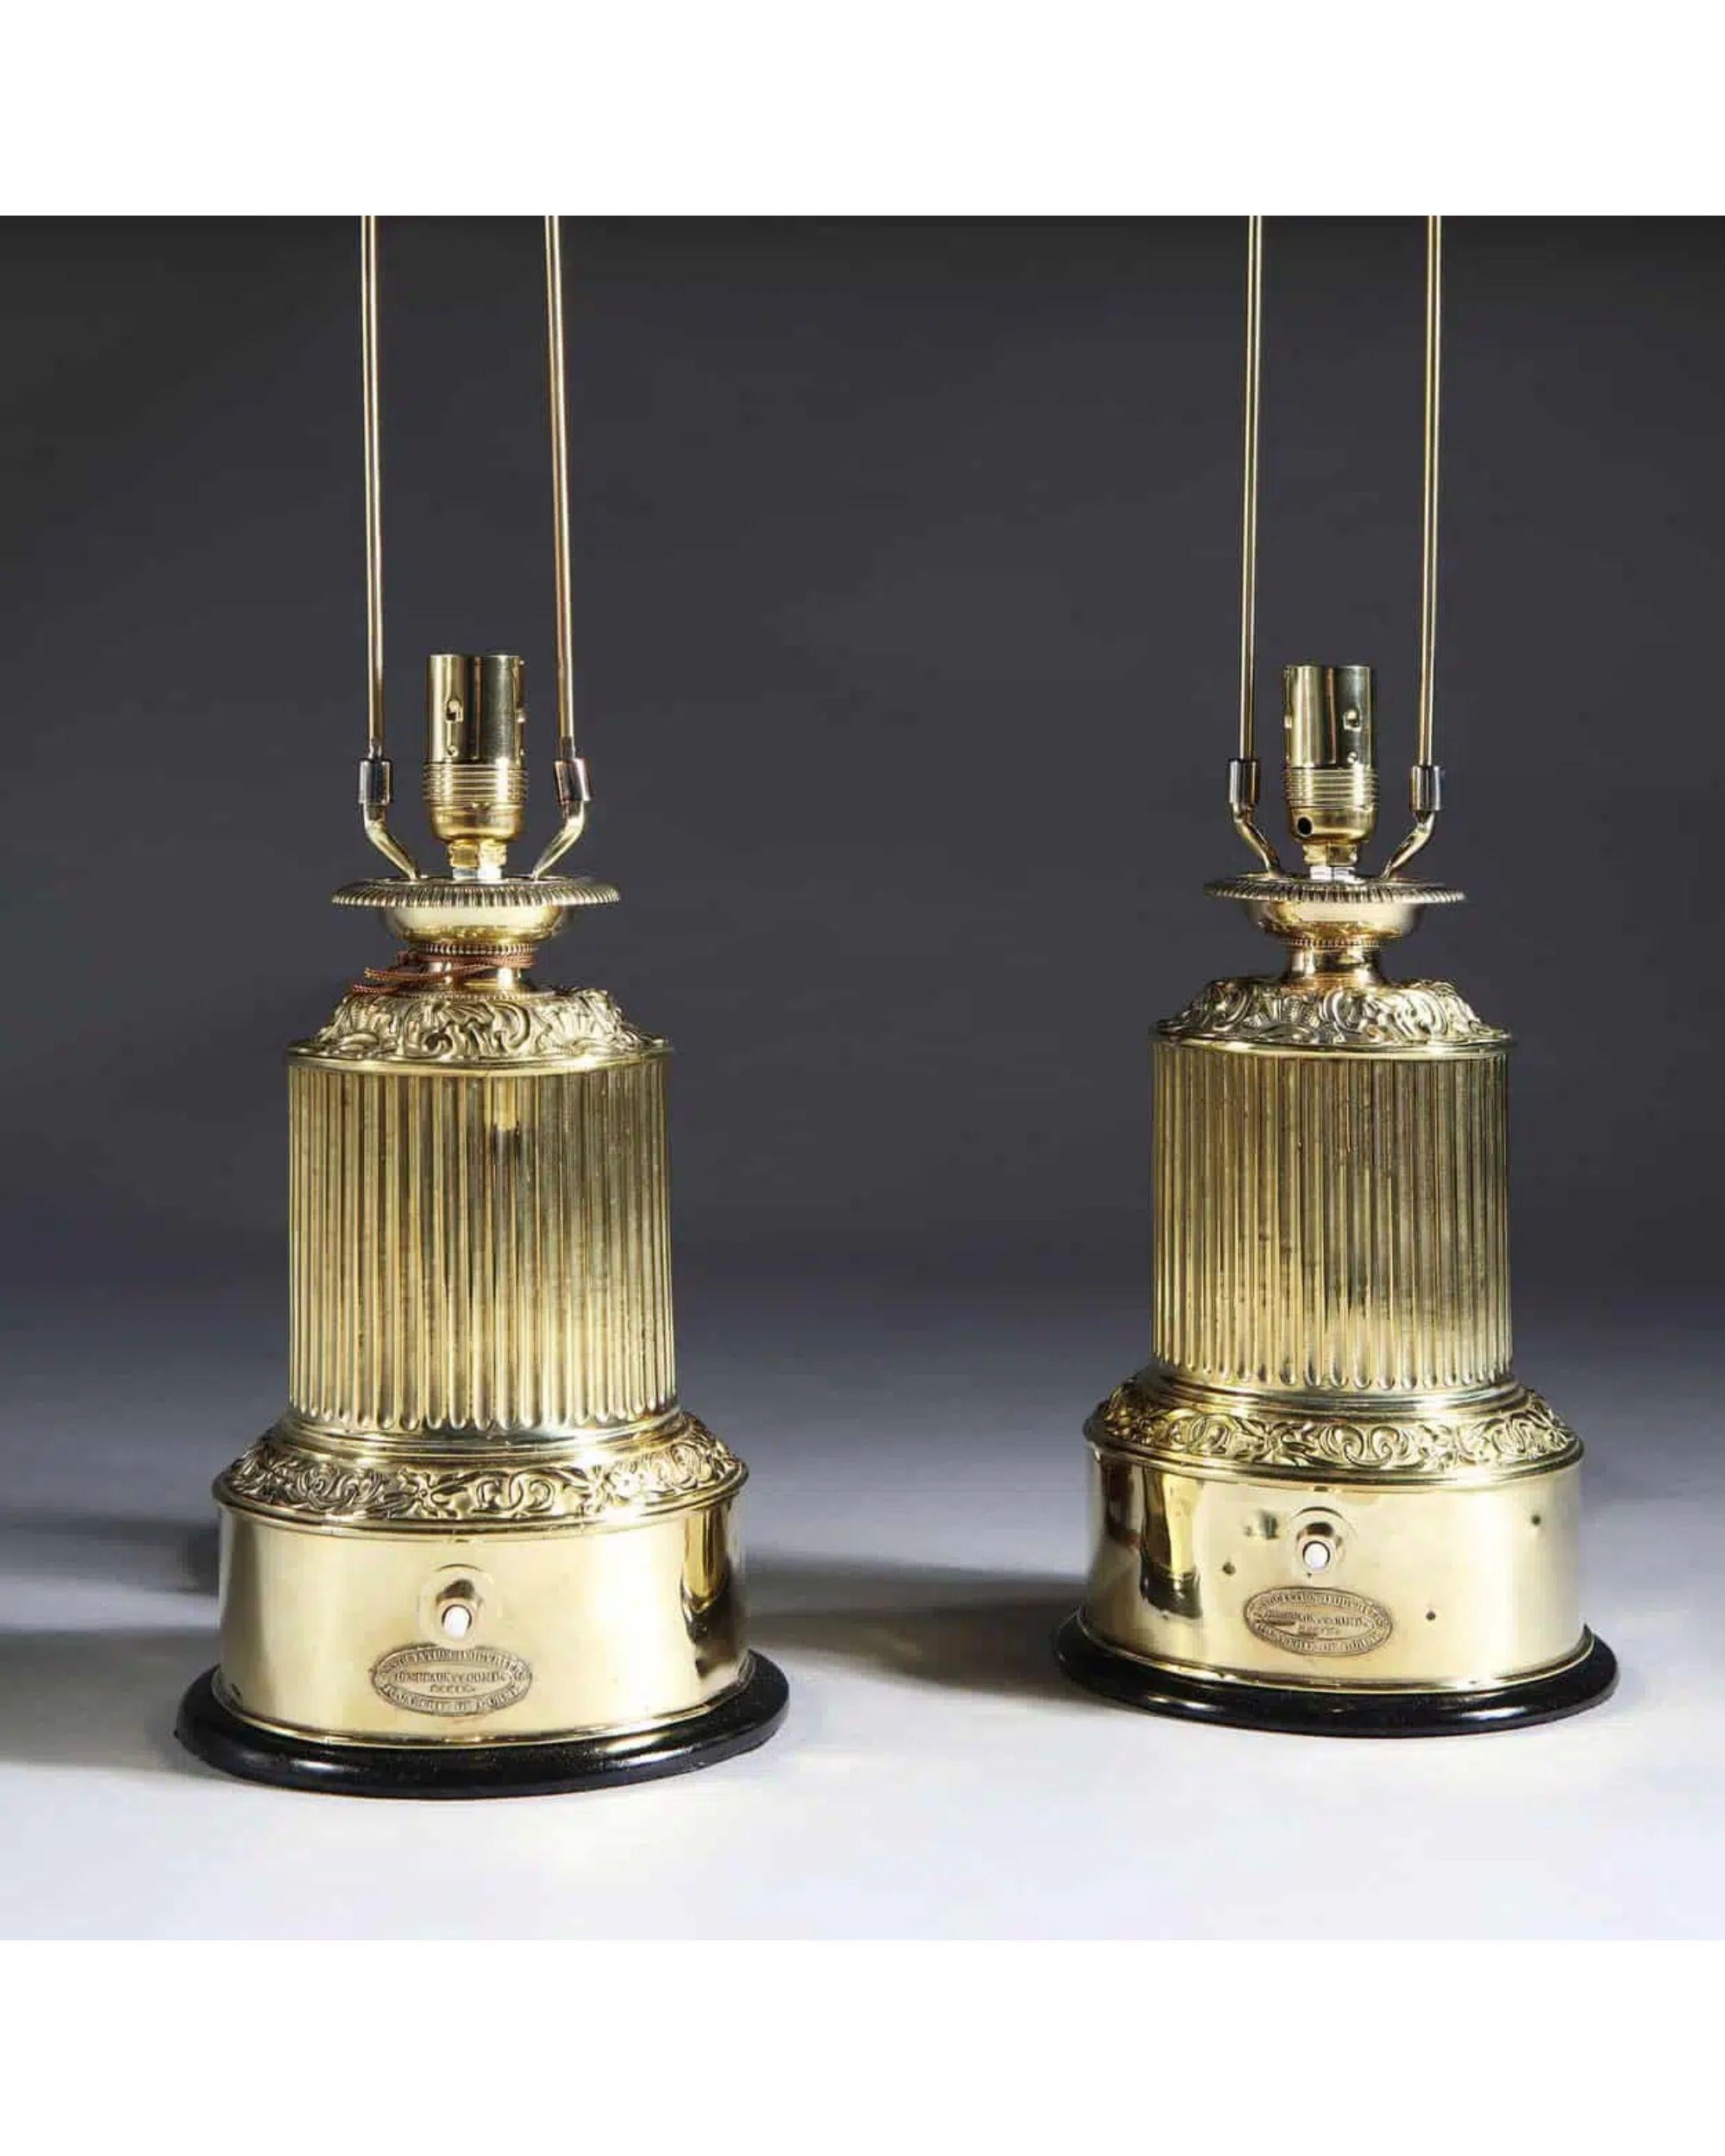 Ein seltenes Paar von Charles X repoussierten Messing Colza Tischlampen

Jetzt montiert für Elektrizität mit maßgeschneiderten Pappschirmen und Messingknäufen. Mit der Herstellermarke Desbeaux & Co.

Zusätzliche Informationen: 
Herkunft: